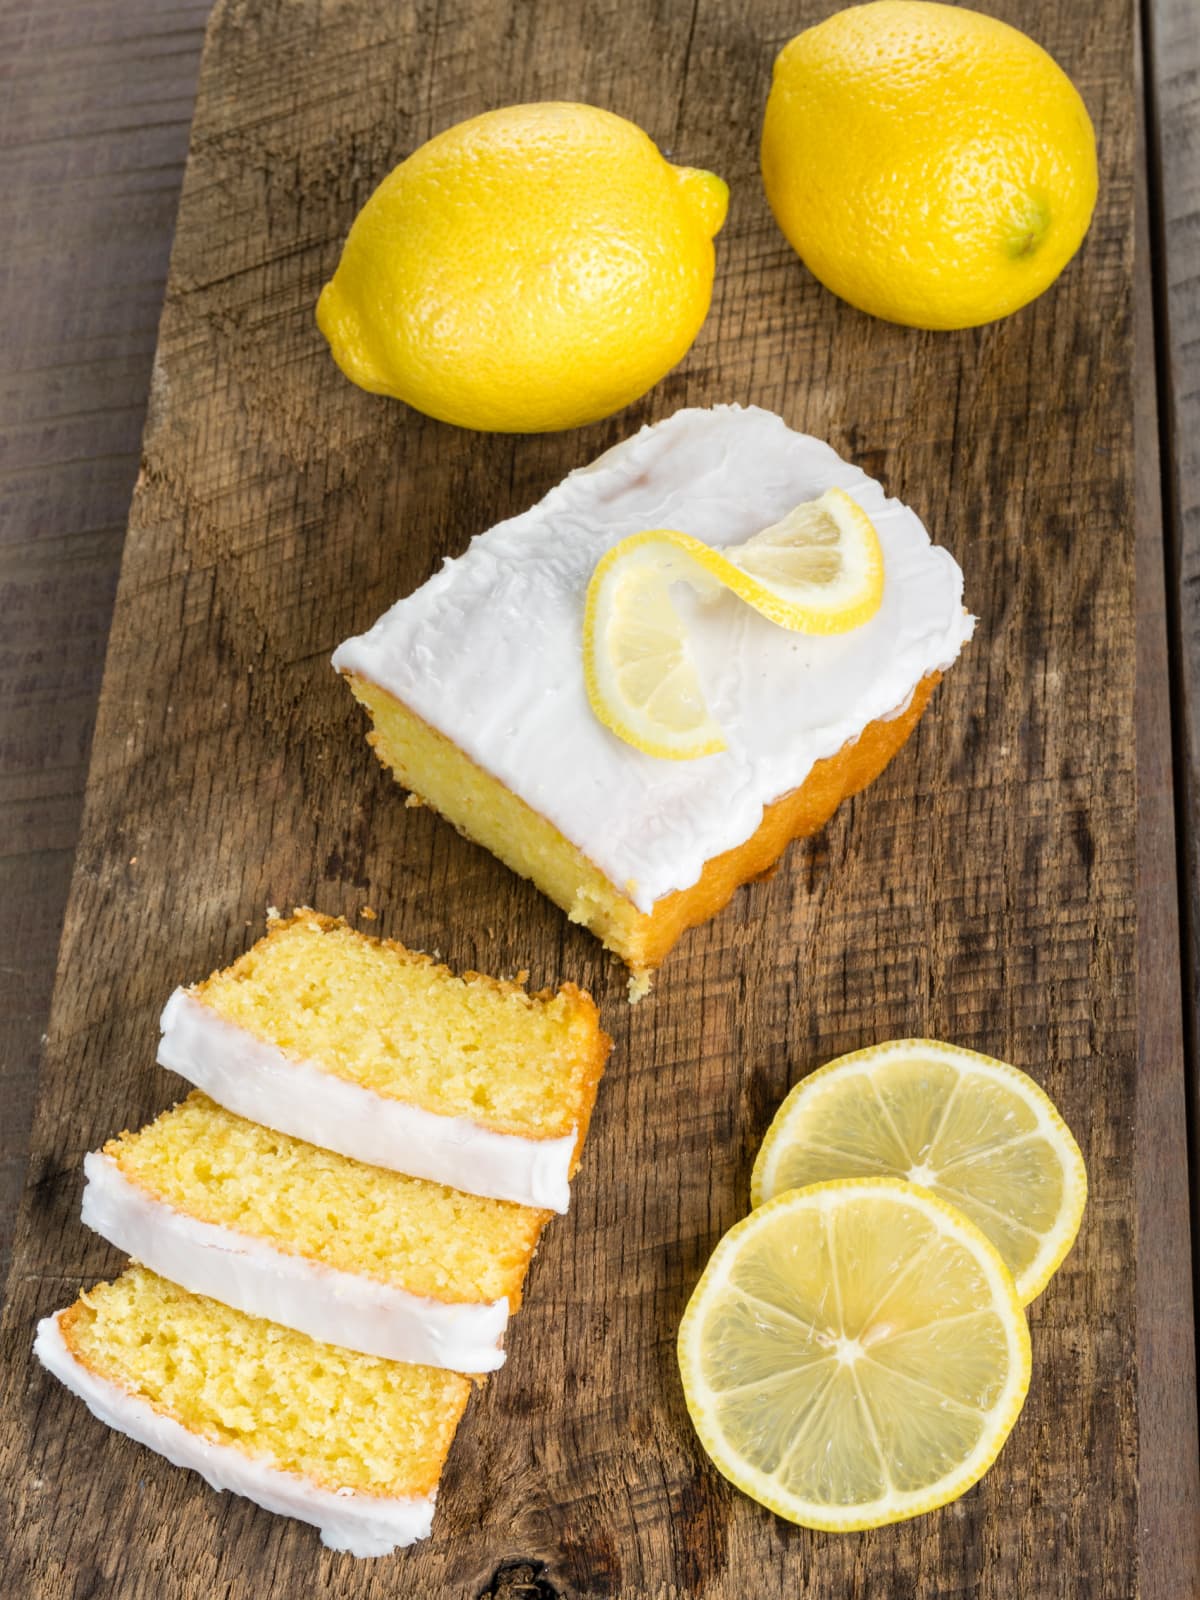 Top of Lemon Loaf Cake sliced